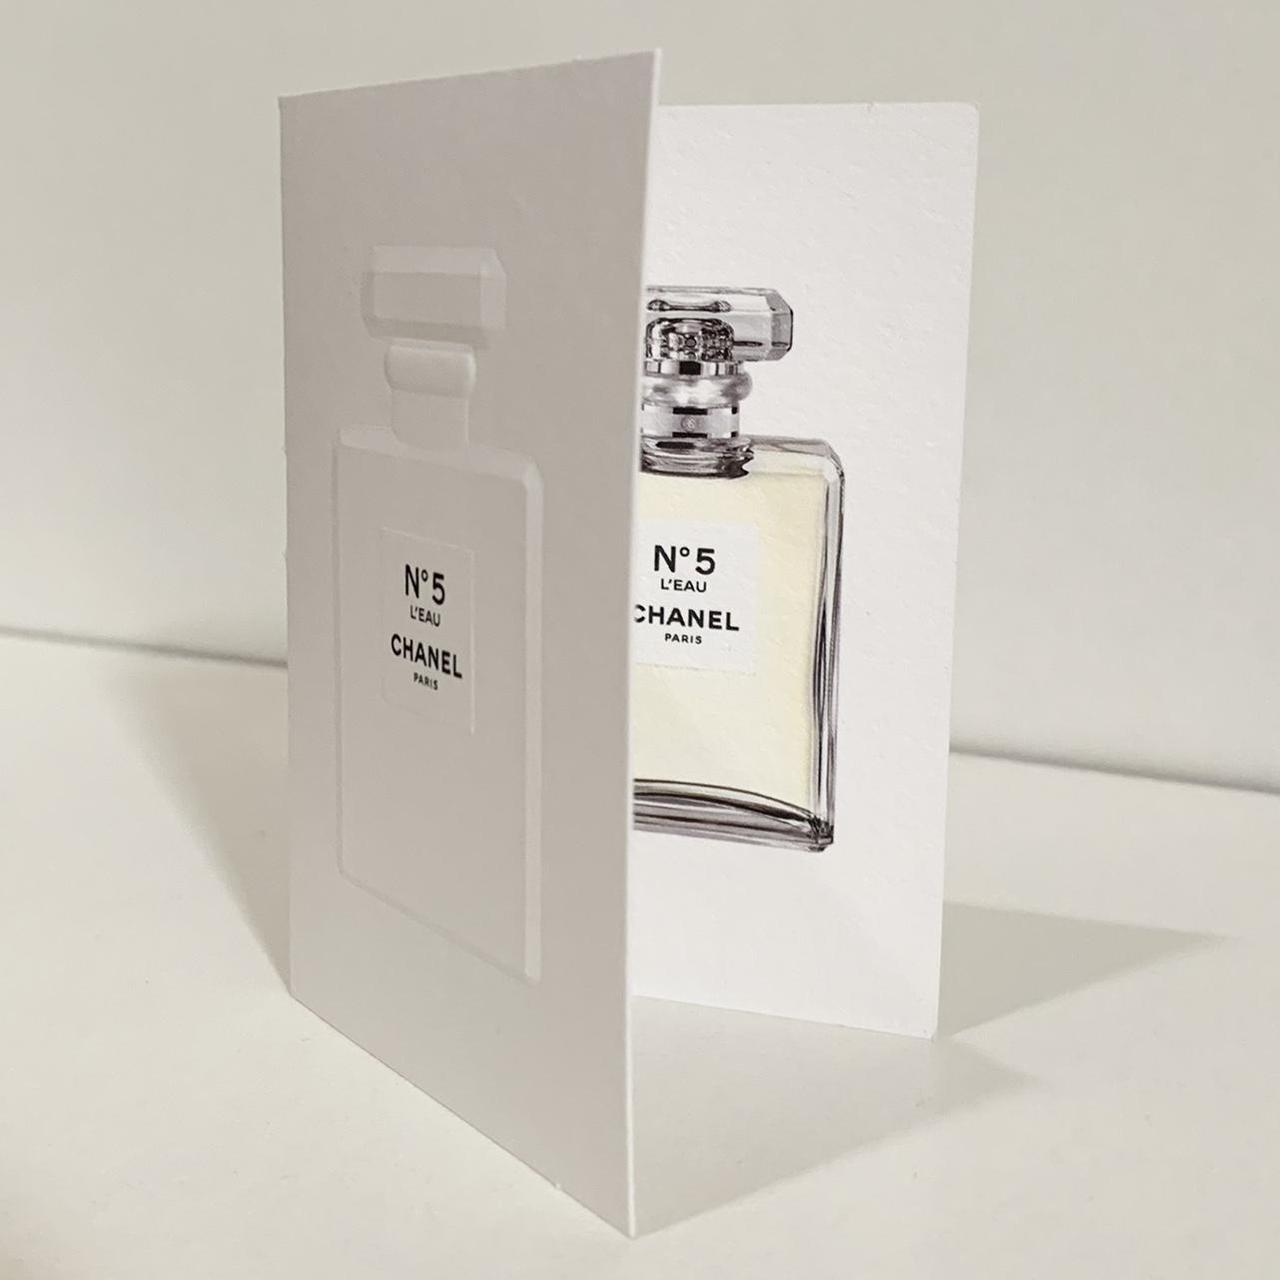 2 VINTAGE CHANEL Bottles - No 5 Perfume 1/4 oz + Coco Parfum .25 oz no  Label $40.00 - PicClick